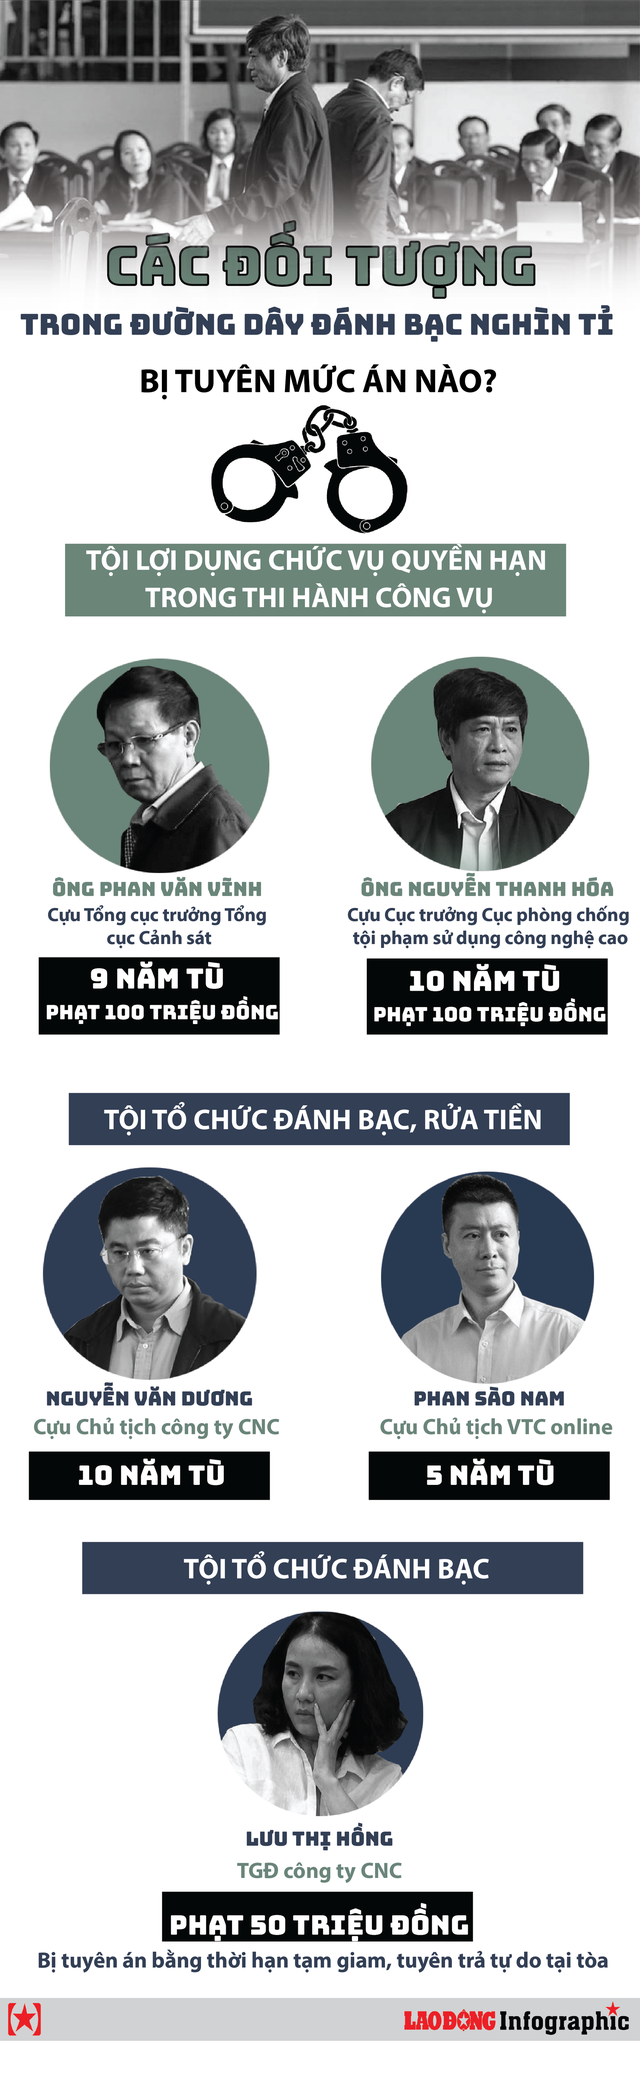 Phan Sào Nam nộp 1.300 tỉ phải khác Nguyễn Văn Dương nộp 240 tỉ đồng - Ảnh 2.